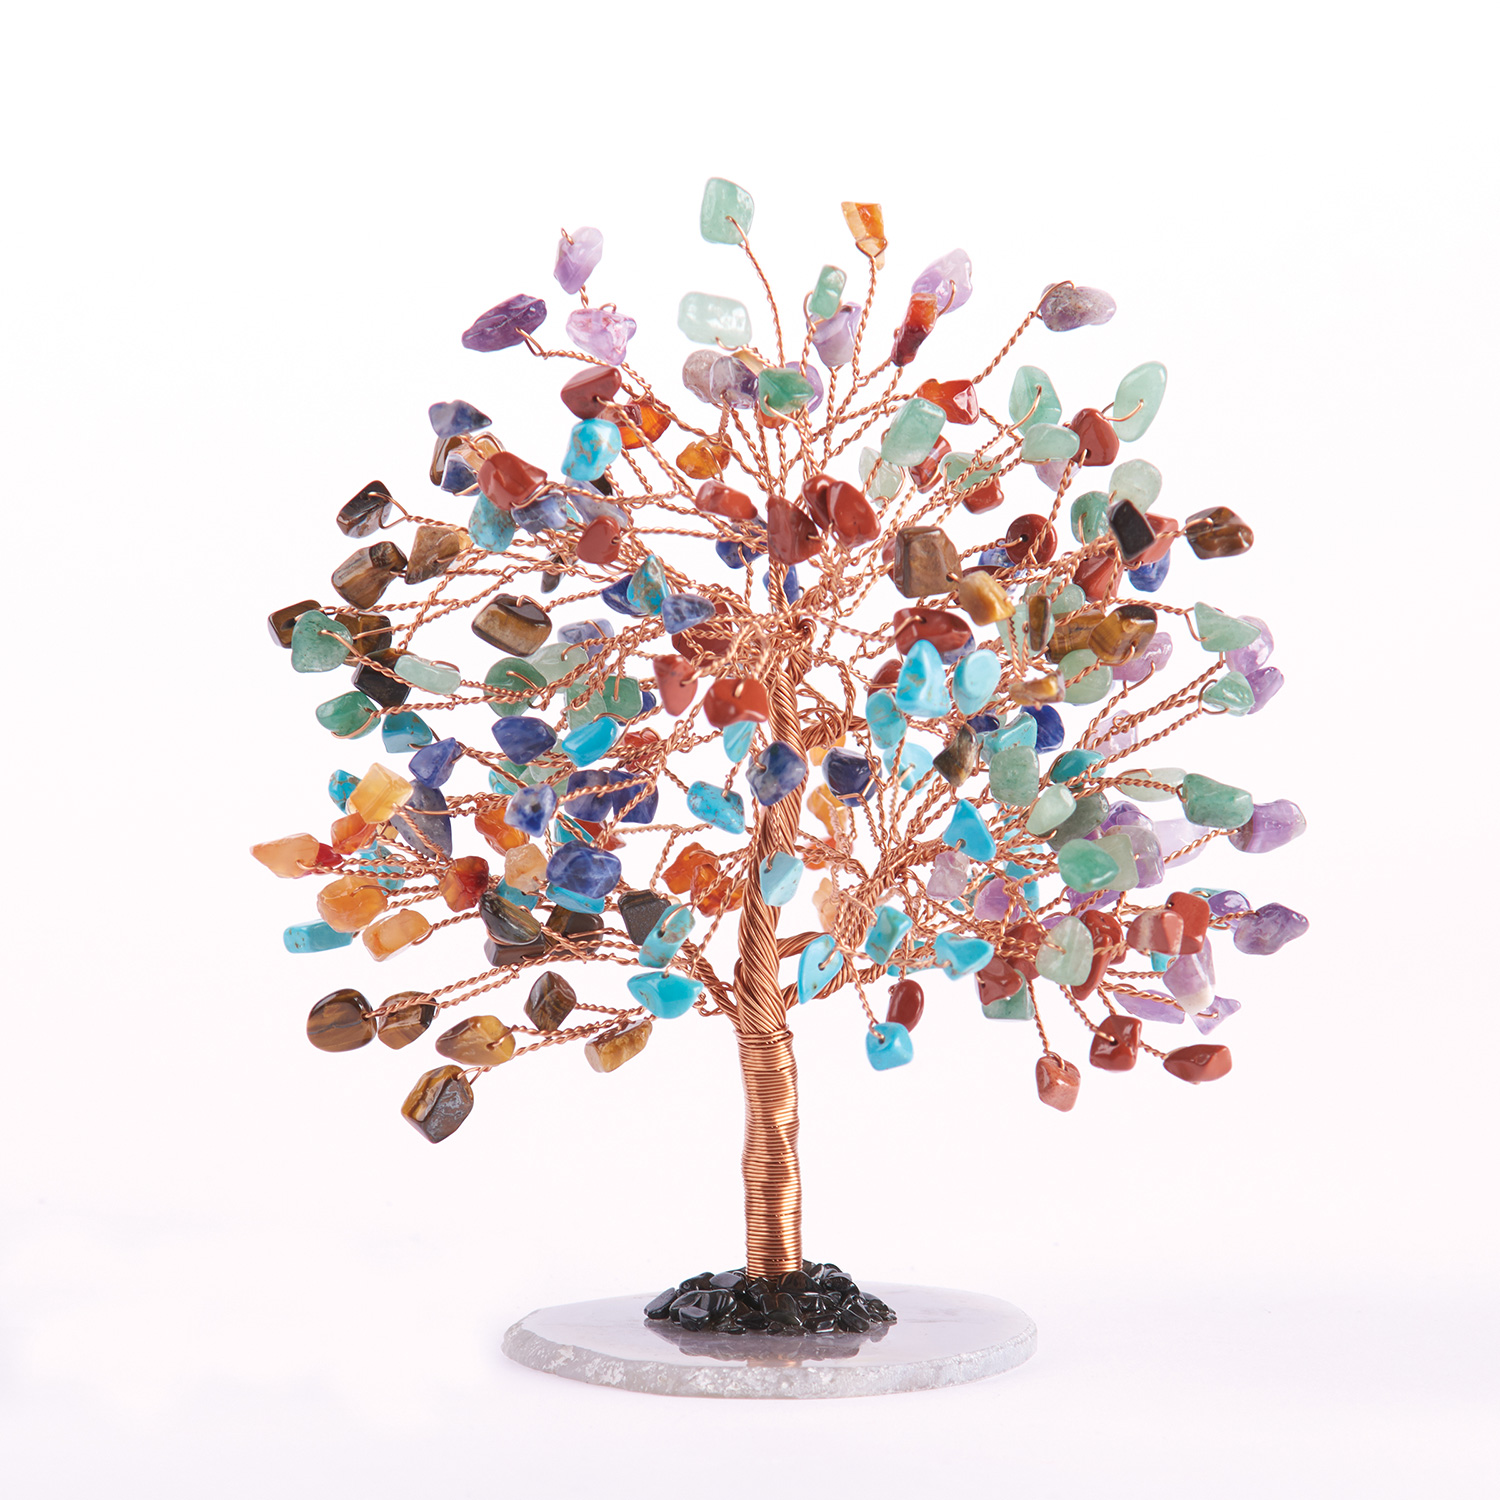 ART & ARTIFACT Copper Gemstone Tree - Wire Sculpture with Genuine Gem Stones